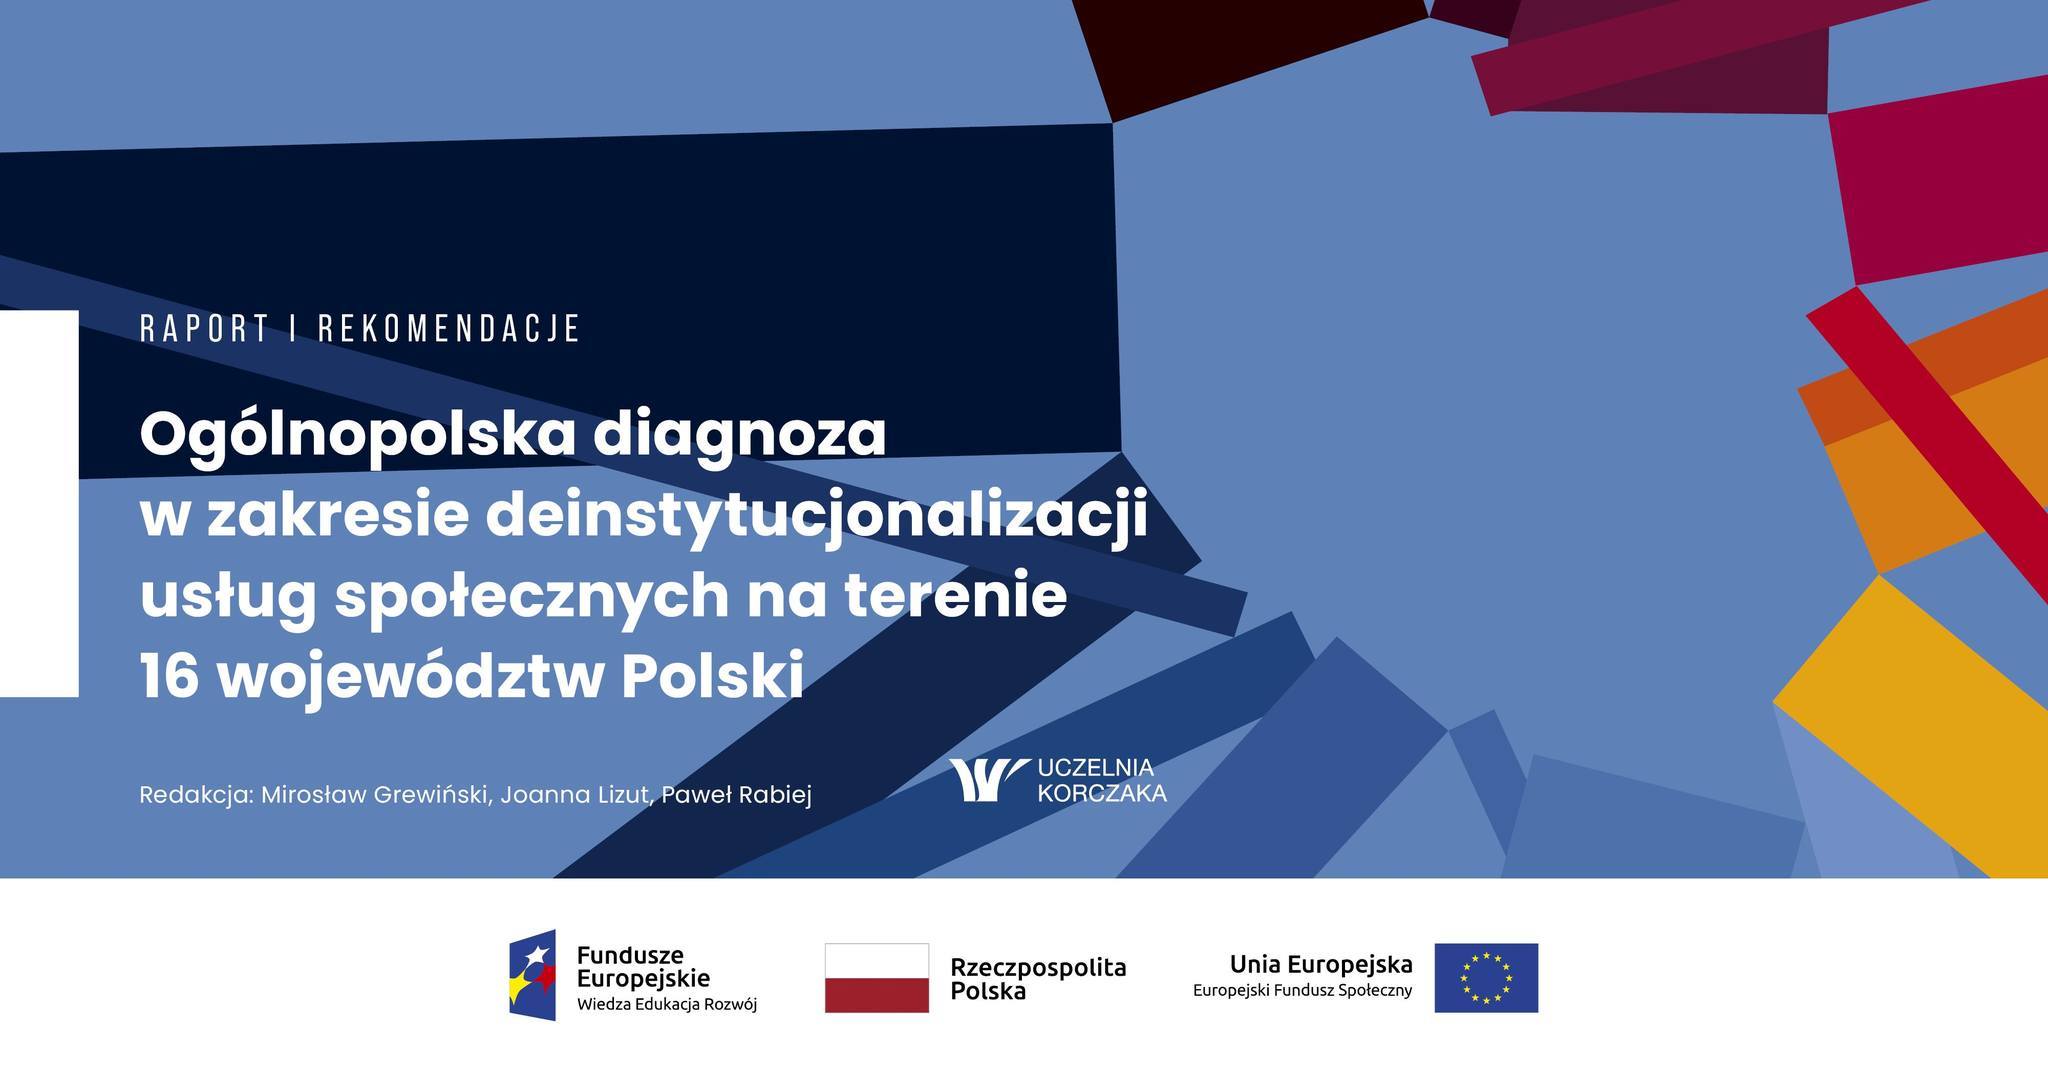 „Ogólnopolska diagnoza deinstytucjonalizacji usług społecznych na terenie 16 województw Polski”